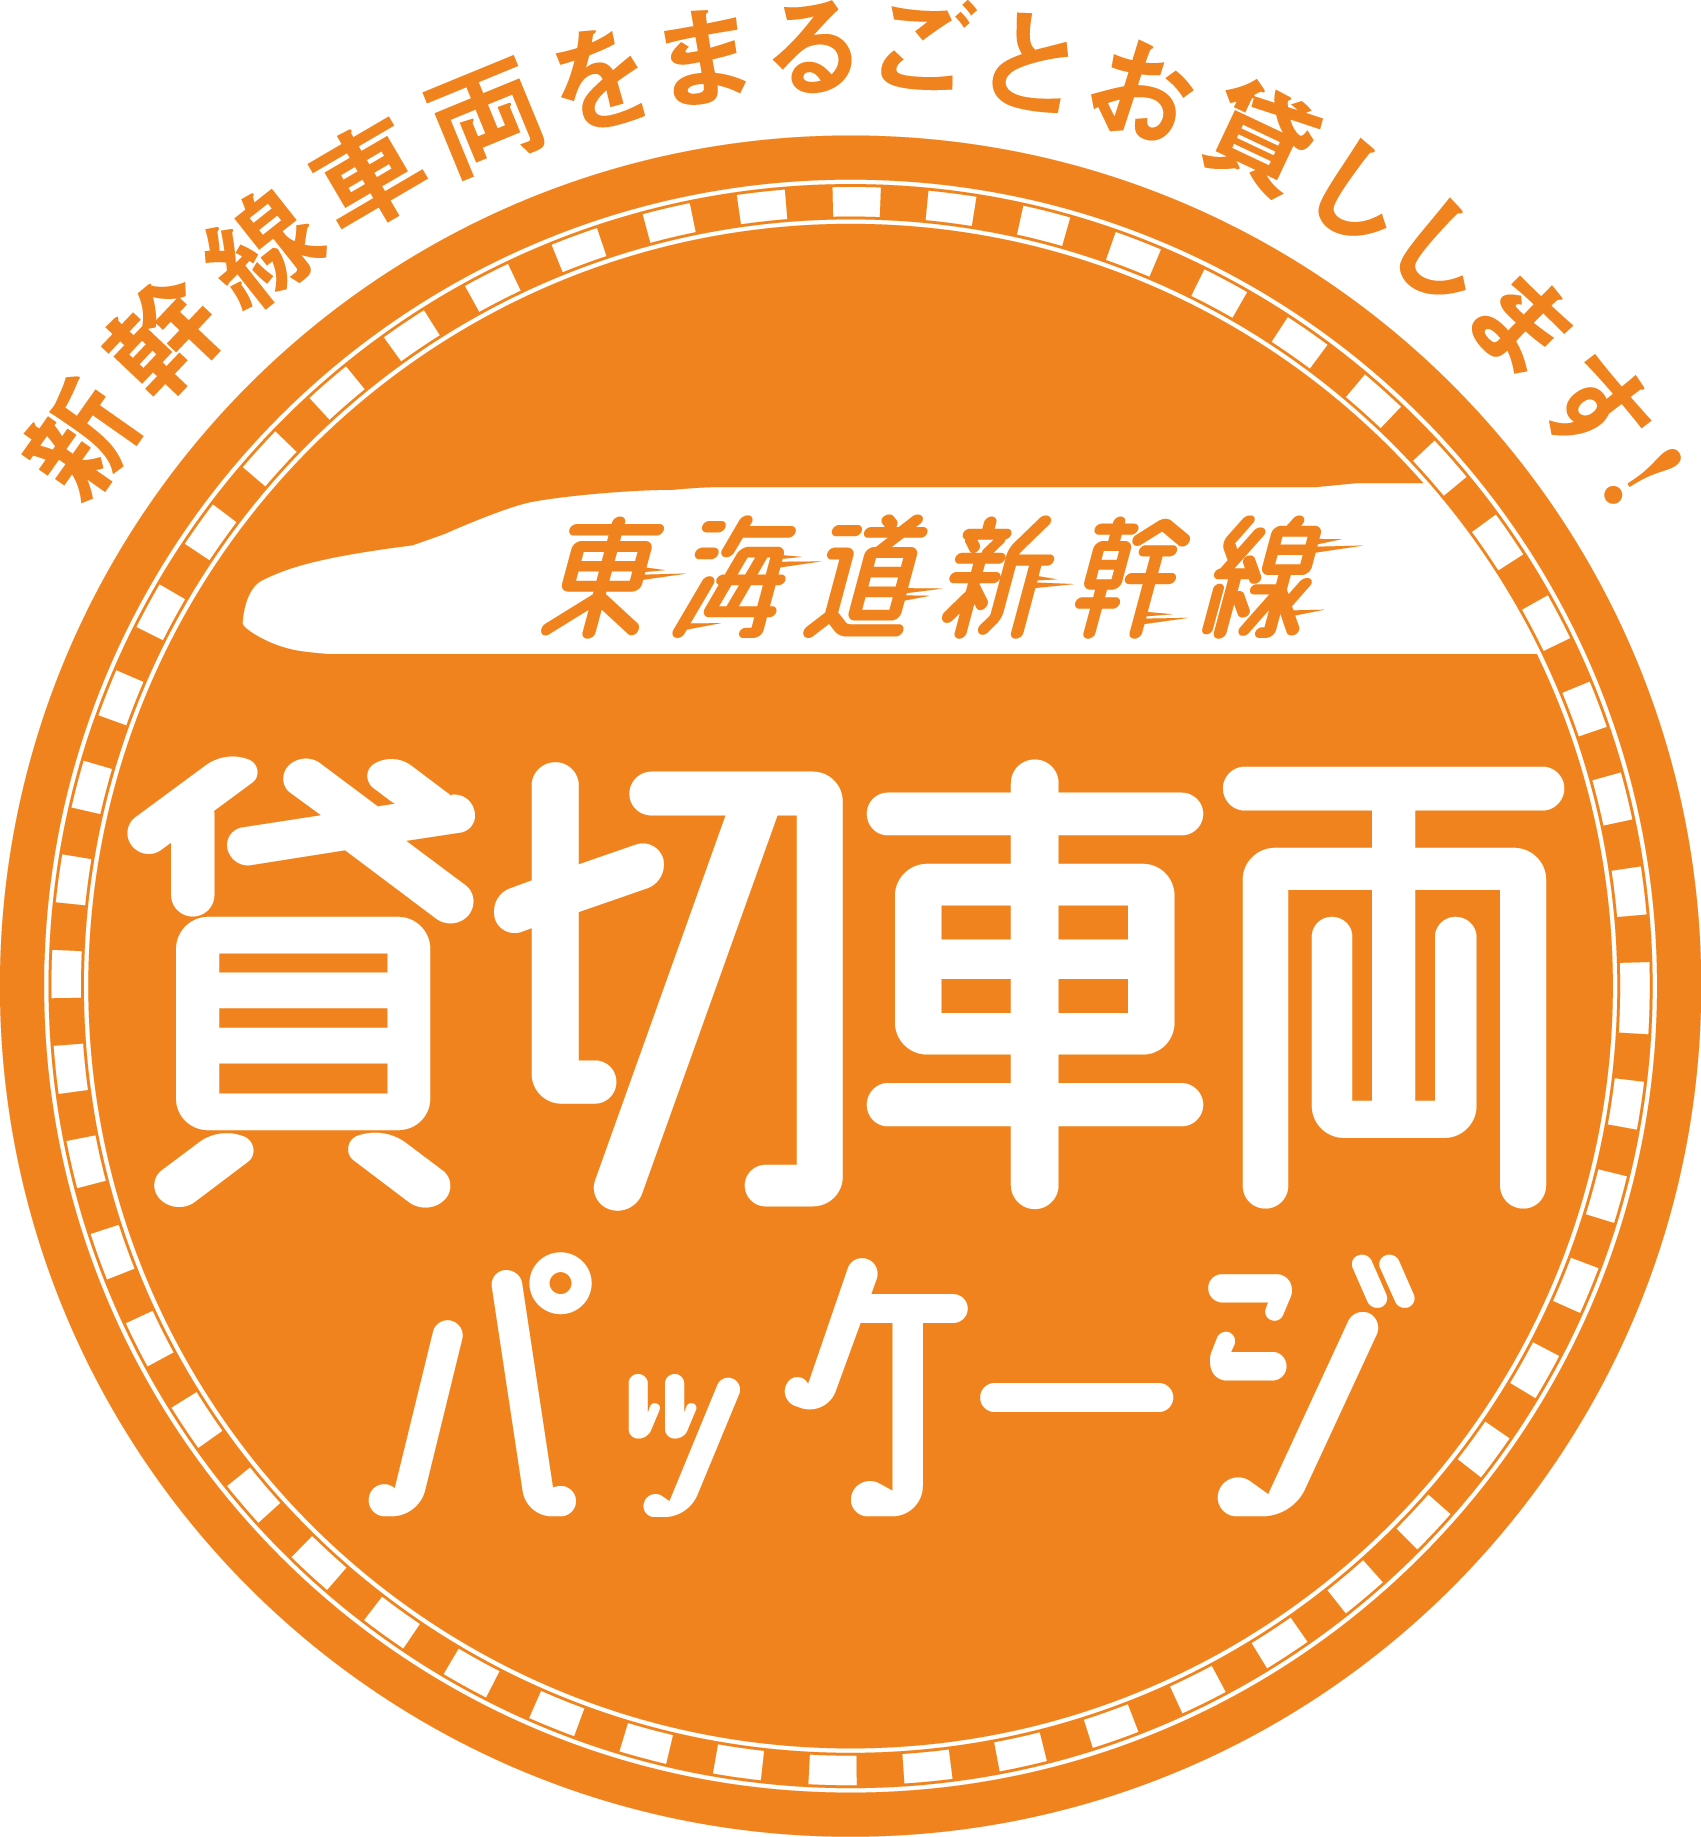 東海道新幹線 貸切車両パッケージ